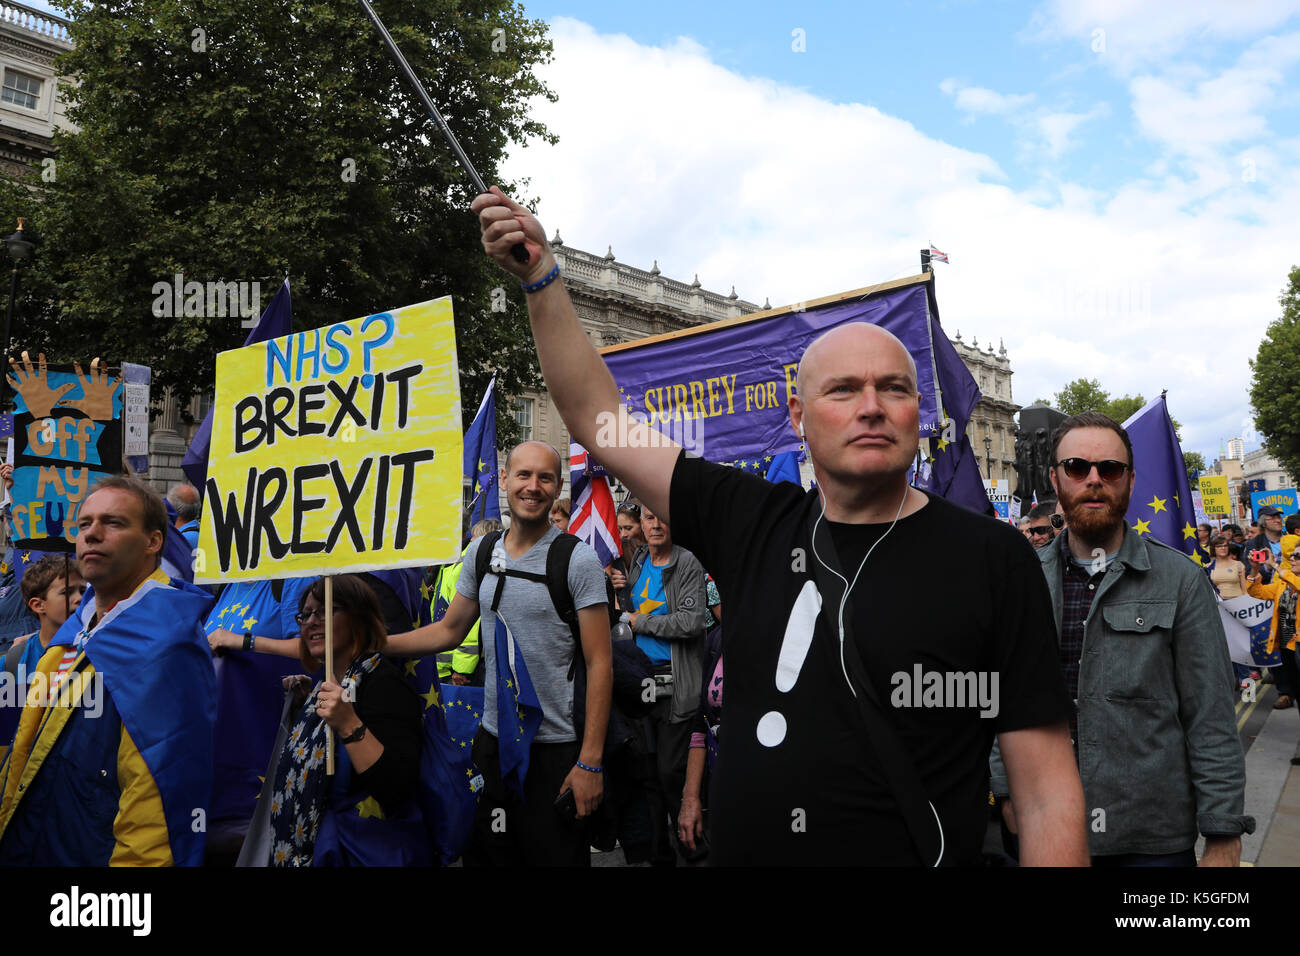 Londres, Royaume-Uni. 9 Septembre, 2017. Une foule de manifestants pro-UE vers le bas mars Whitehall, centre de Londres au cours de la Marche pour l'Europe le 9 septembre 2017 Crédit : Dominic Dudley/Alamy Live News Banque D'Images